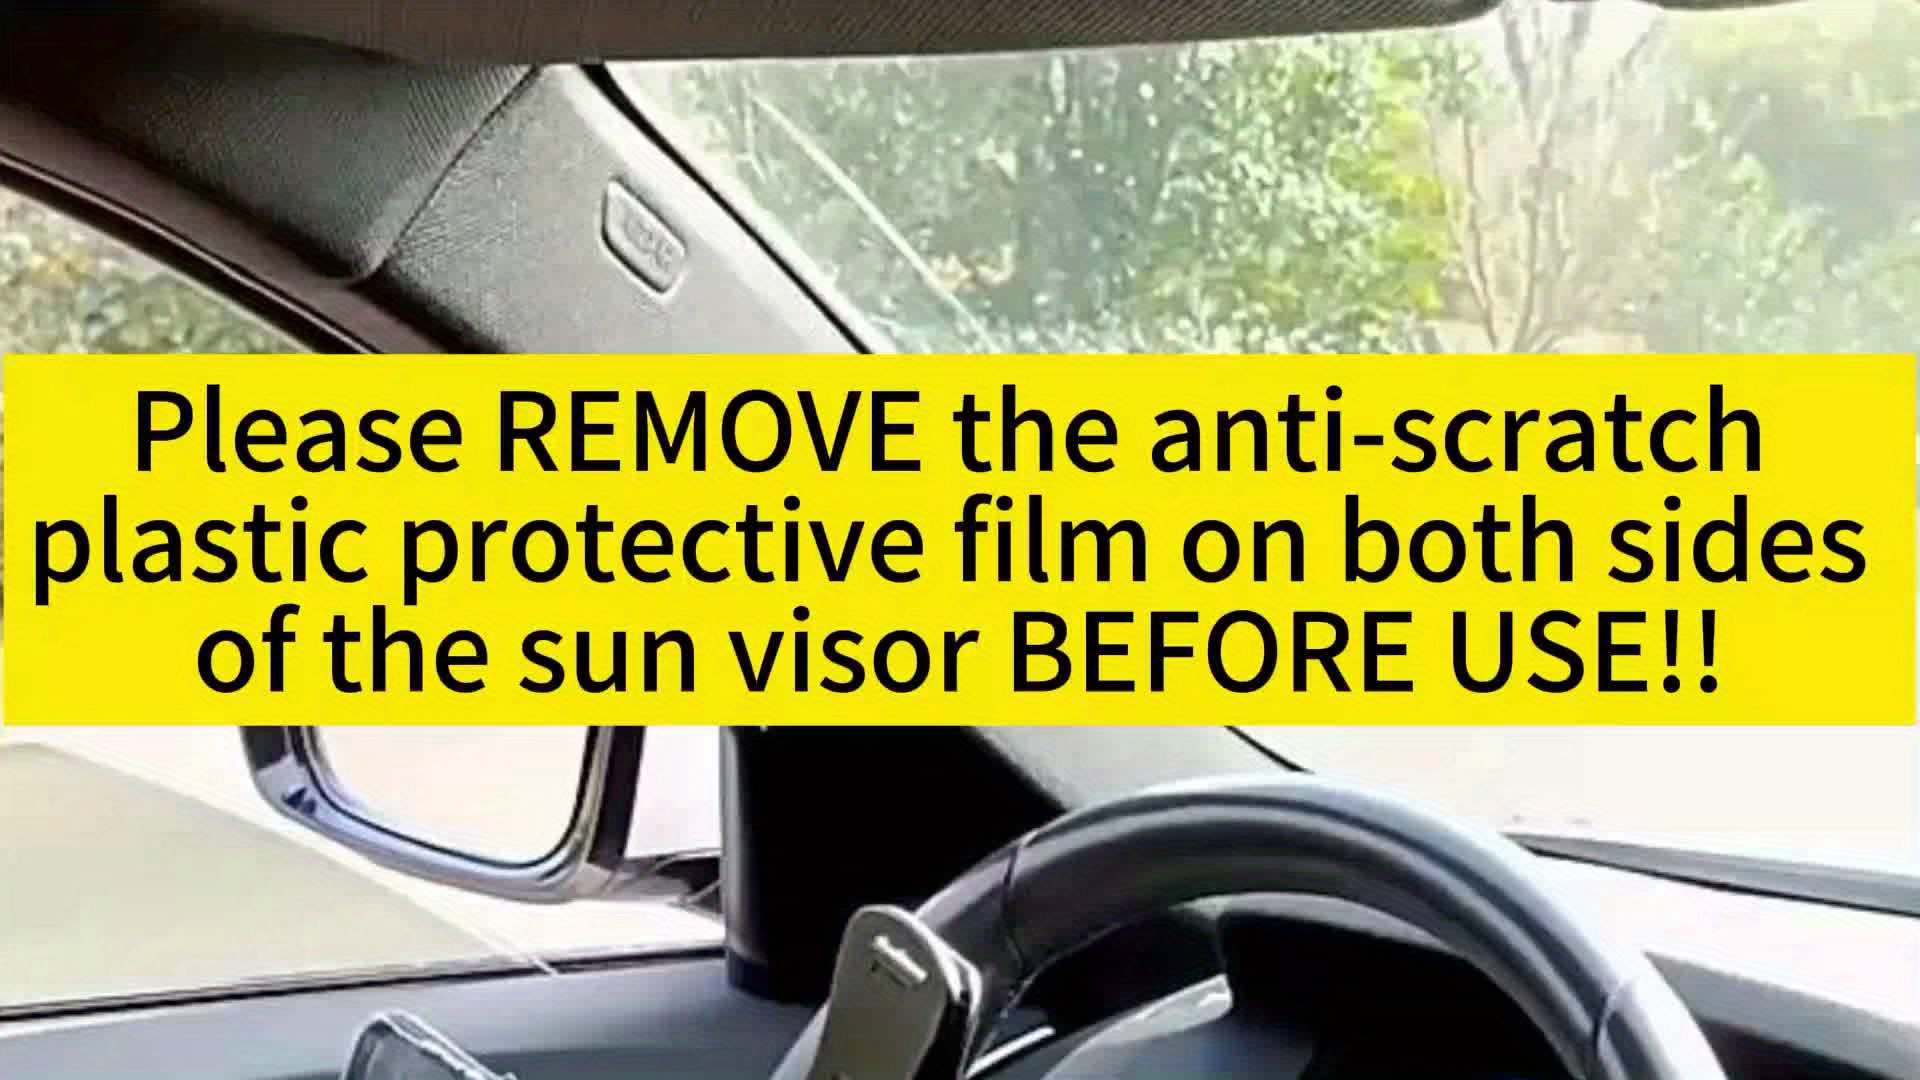 Parasole per auto Starlyf Parasol, per il parabrezza anteriore, per la  protezione dai raggi UV e dal calore del sole, per mantenere il veicolo più